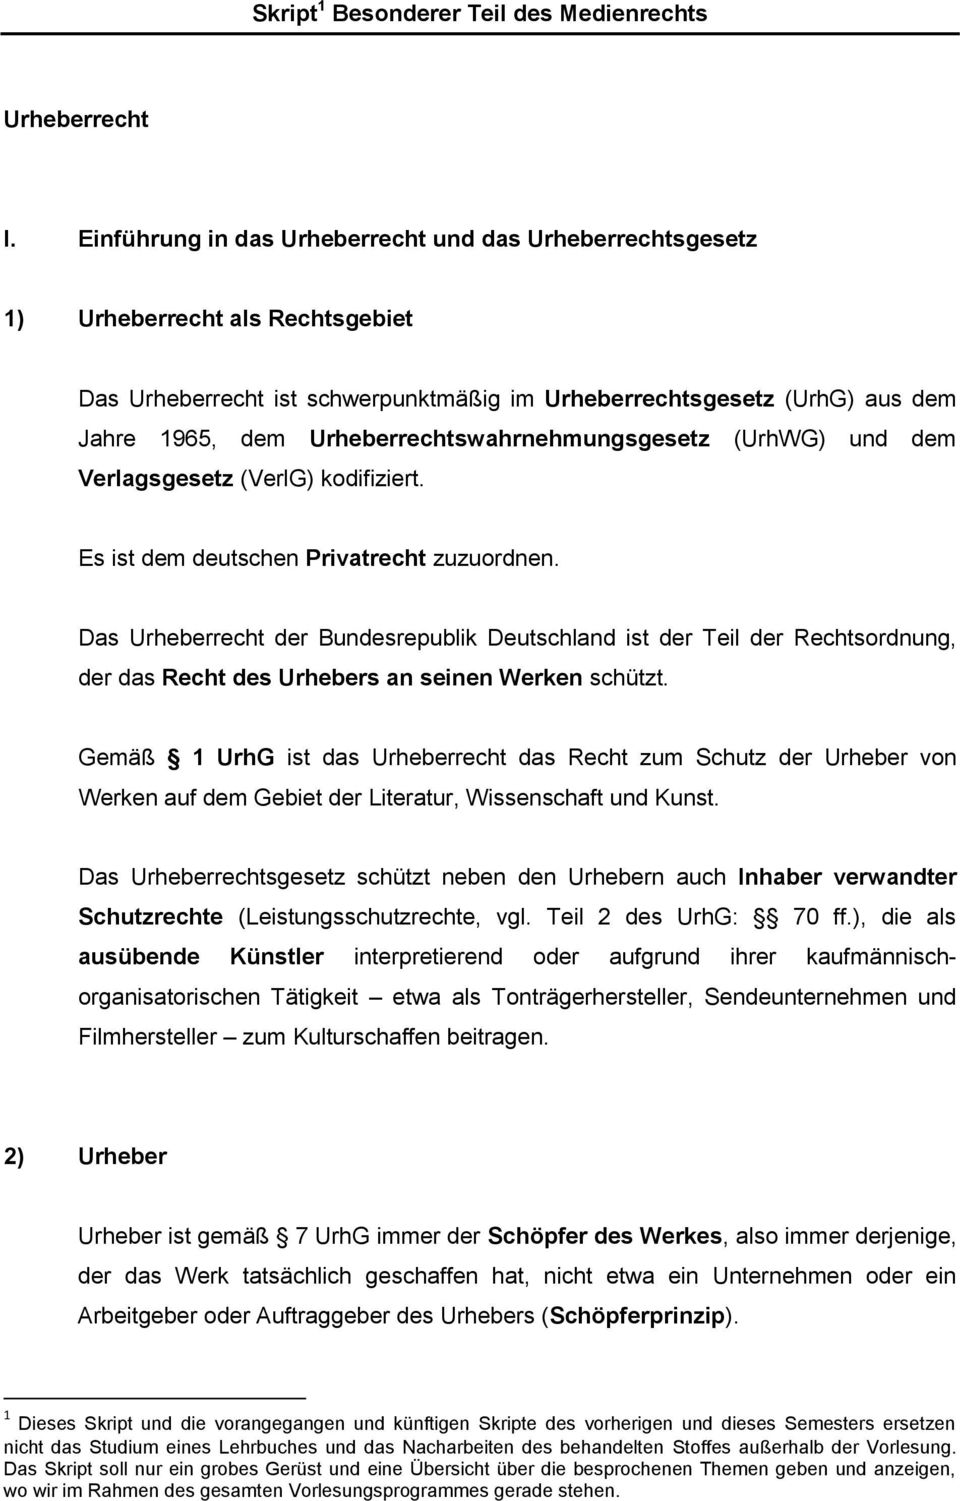 Urheberrechtswahrnehmungsgesetz (UrhWG) und dem Verlagsgesetz (VerlG) kodifiziert. Es ist dem deutschen Privatrecht zuzuordnen.